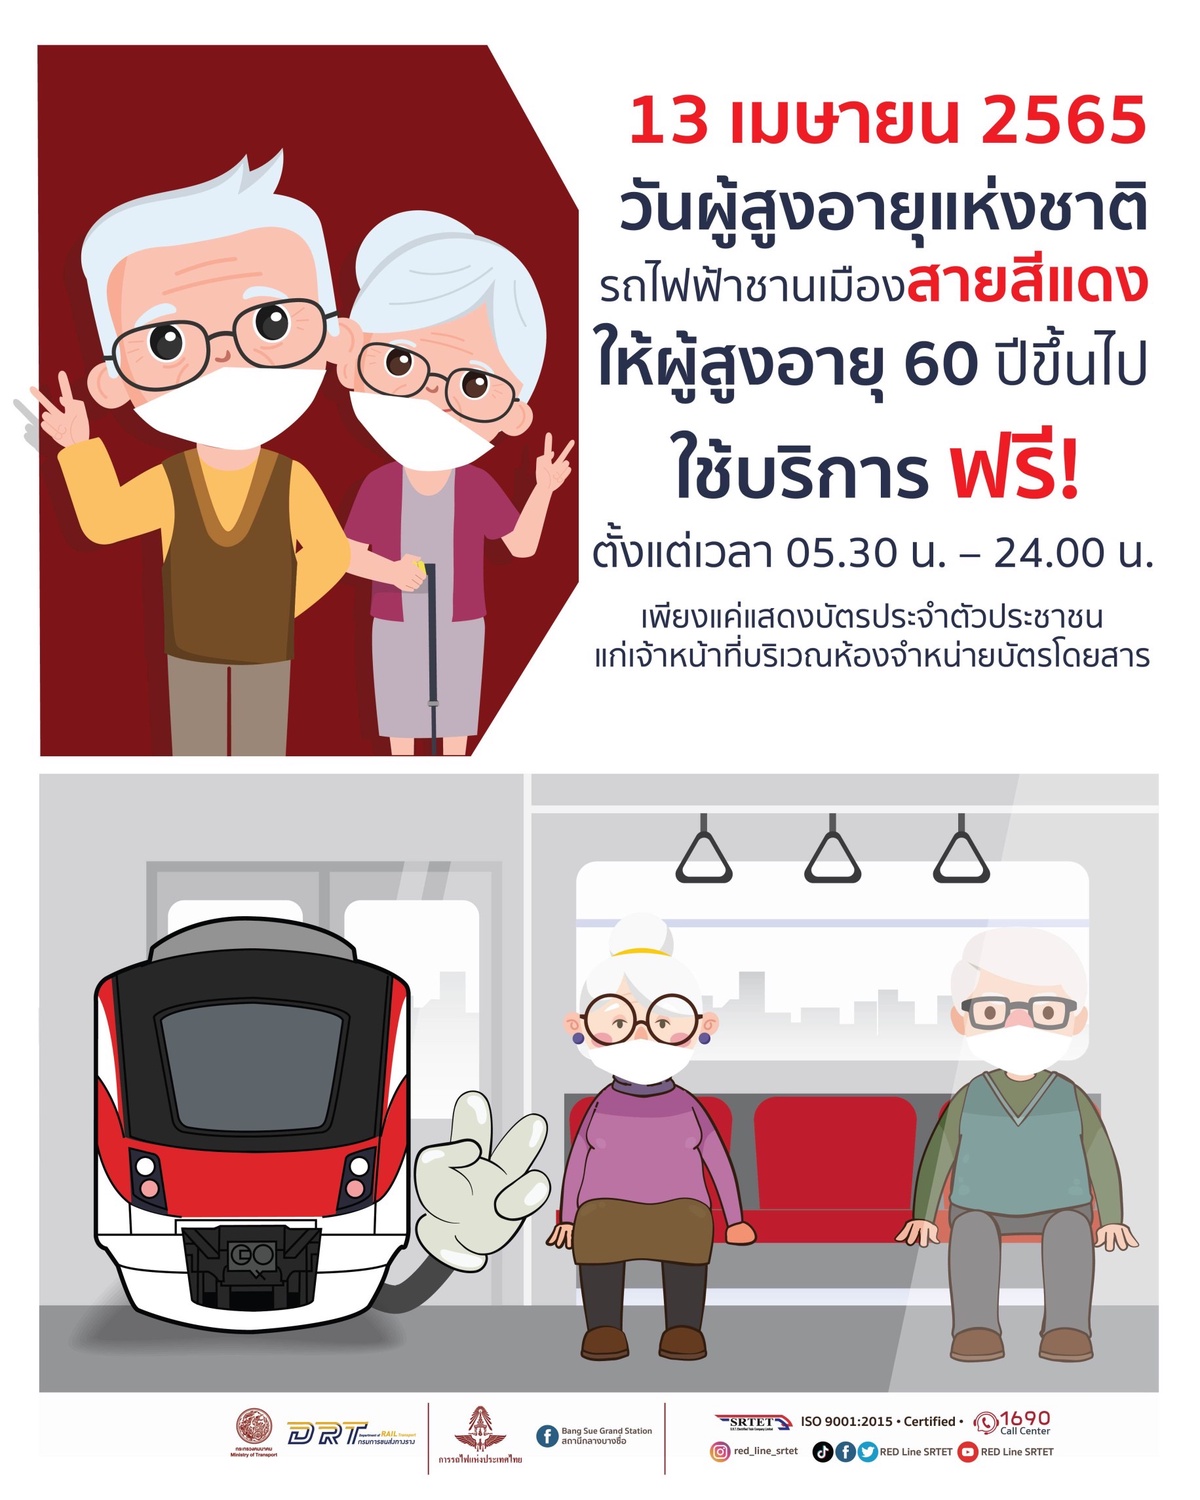 รฟฟท. ให้ผู้สูงอายุ 60 ปีขึ้นไป ใช้บริการรถไฟฟ้าชานเมืองสายสีแดง ฟรี! 13 เมษายน 2565